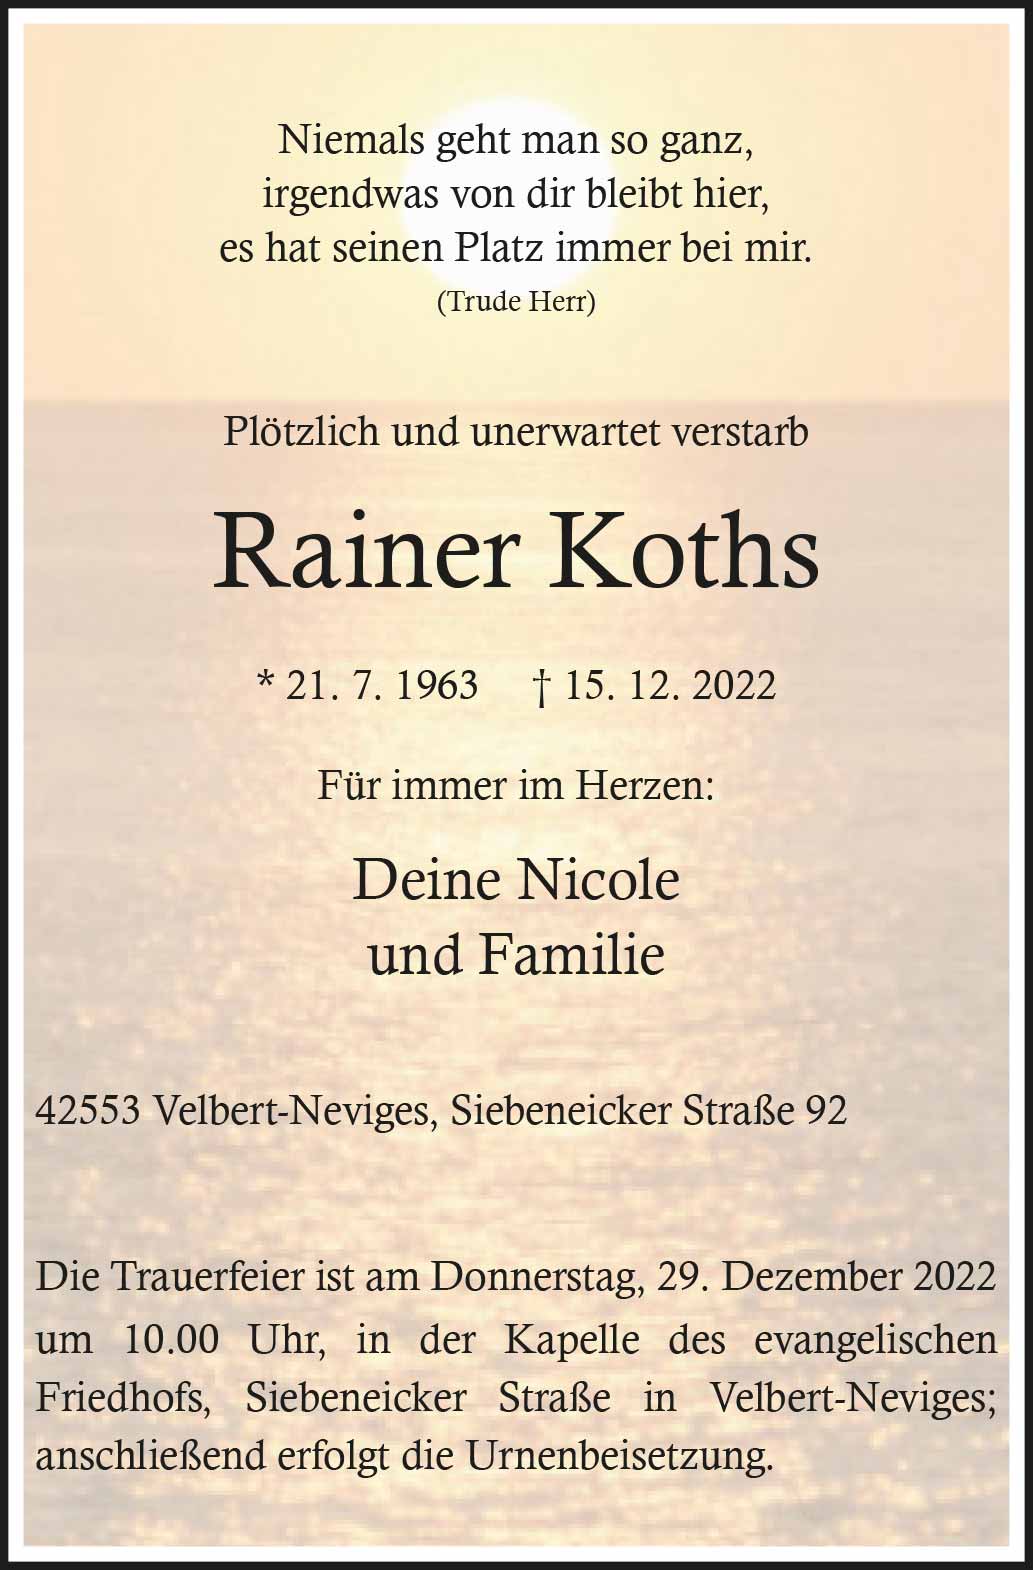 Rainer Koths † 15. 12. 2022